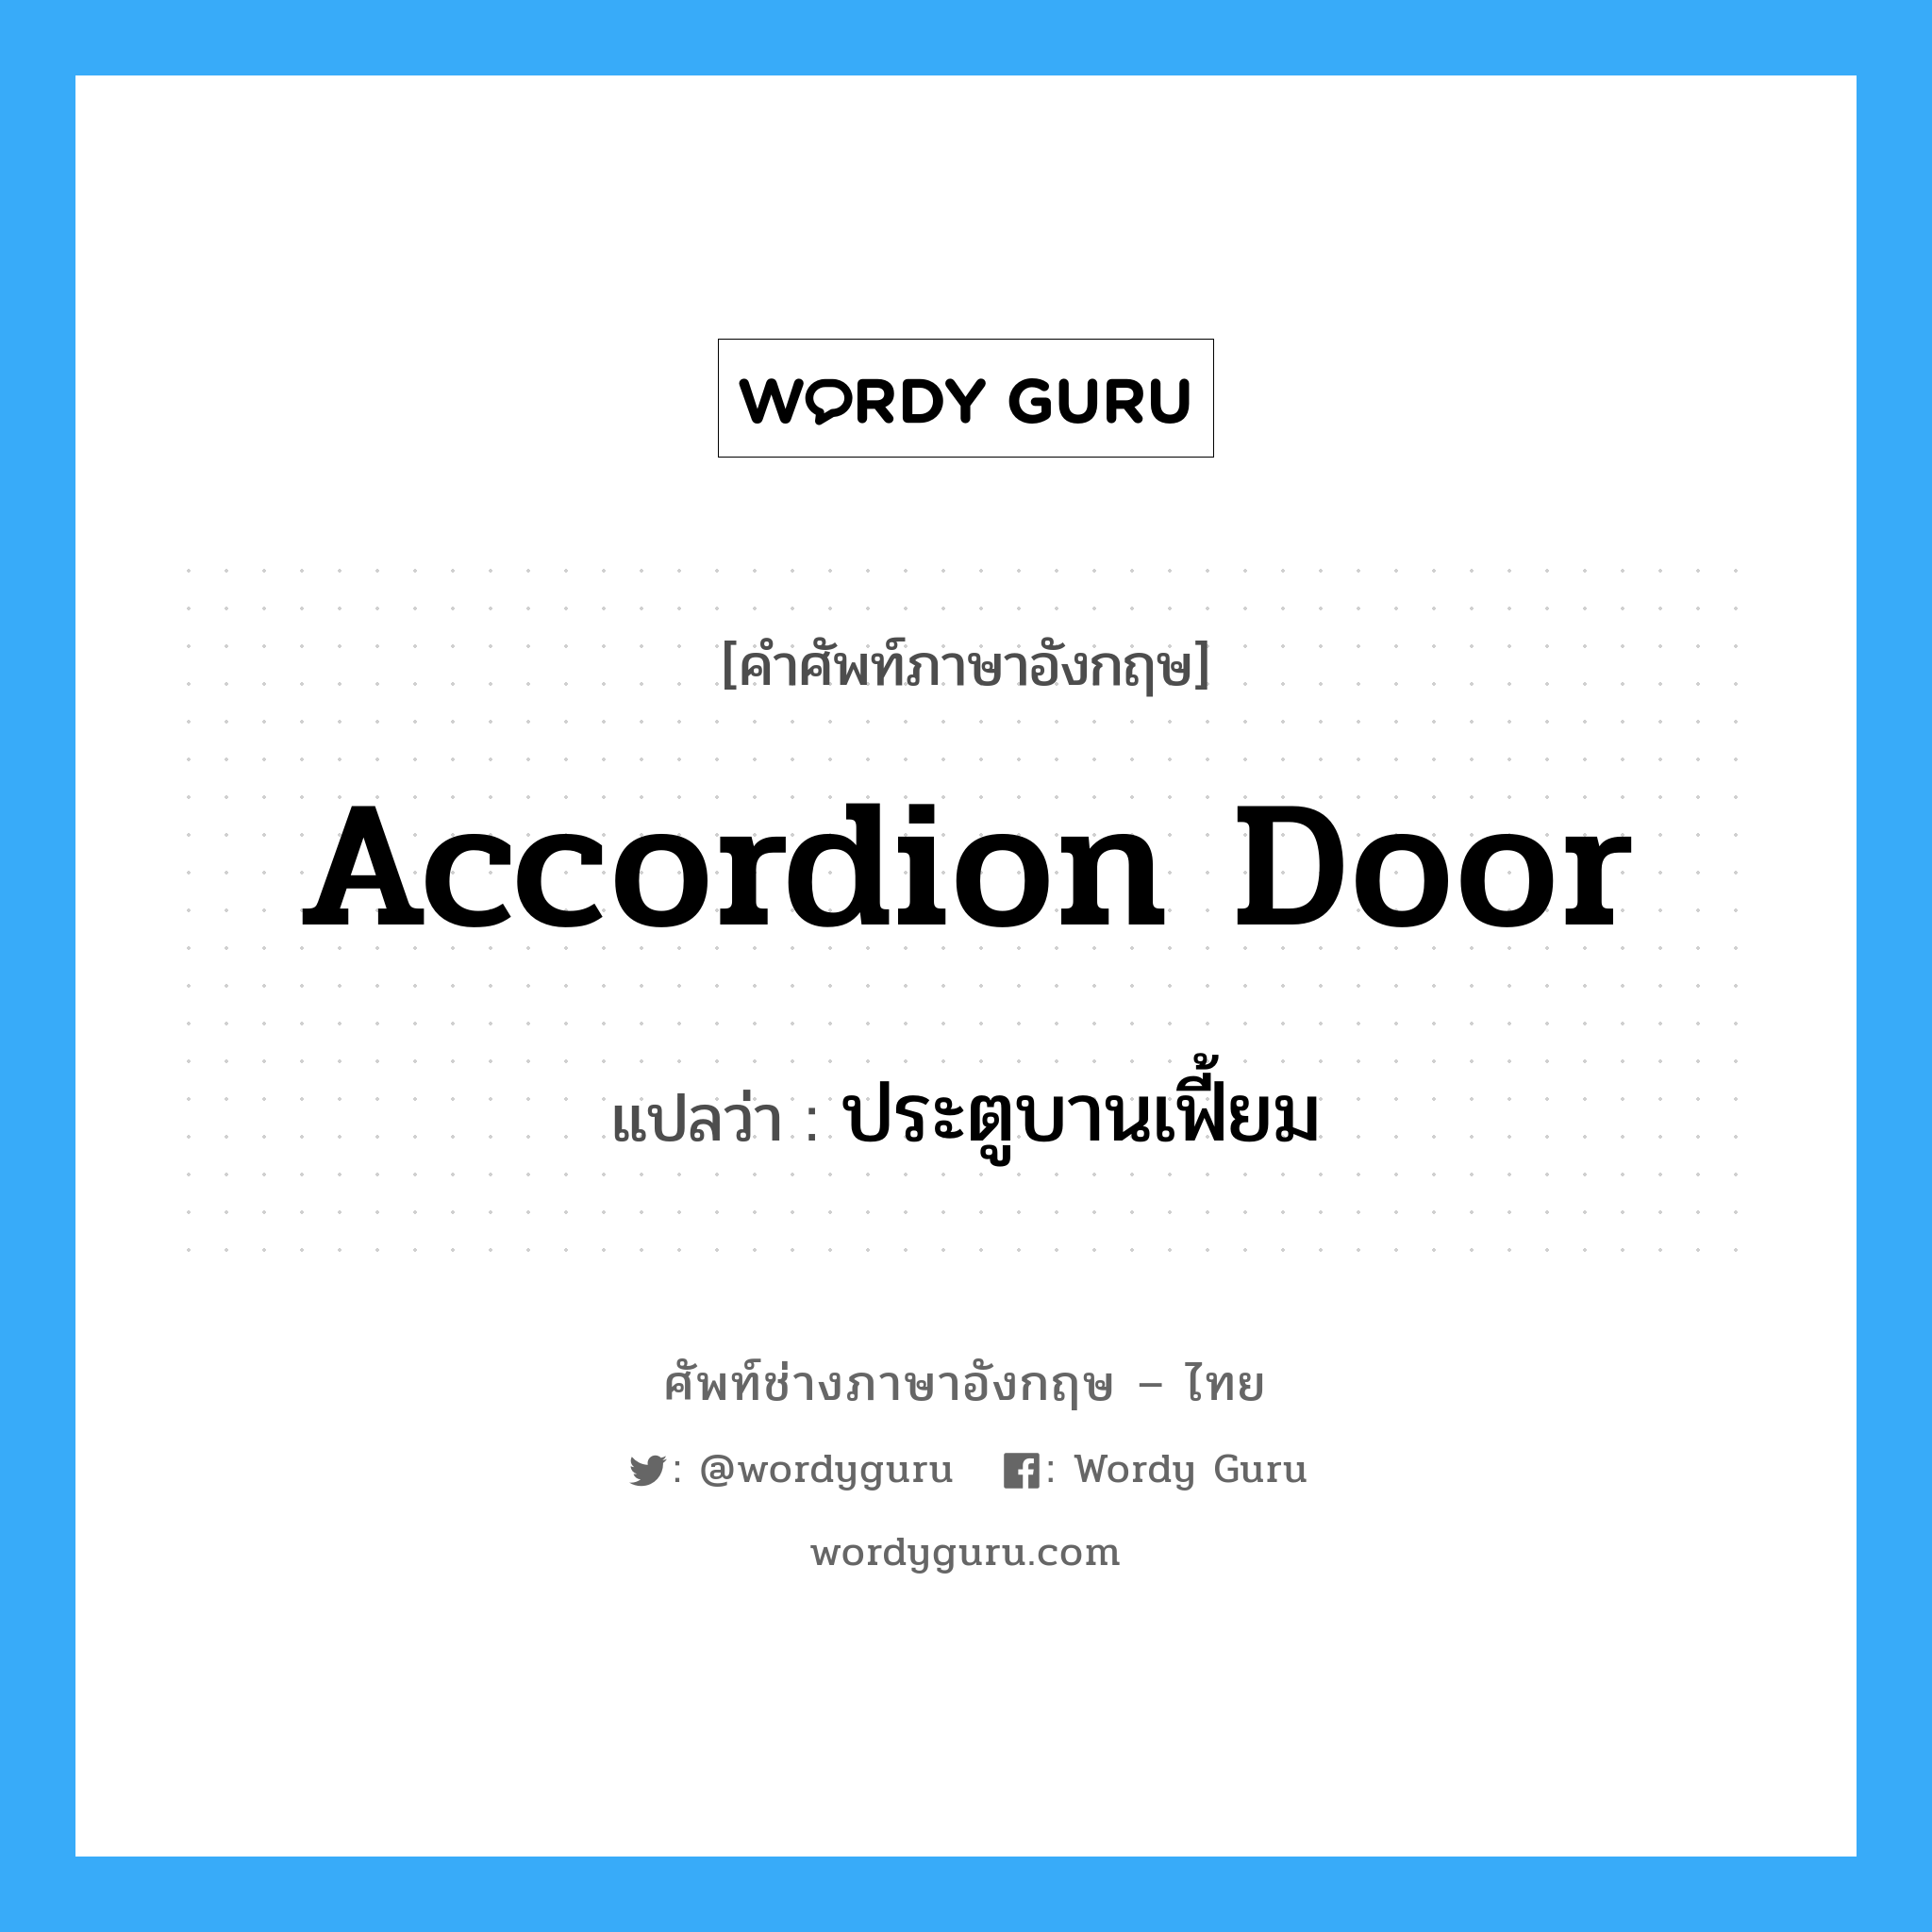 ประตูบานเฟี้ยม ภาษาอังกฤษ?, คำศัพท์ช่างภาษาอังกฤษ - ไทย ประตูบานเฟี้ยม คำศัพท์ภาษาอังกฤษ ประตูบานเฟี้ยม แปลว่า accordion door